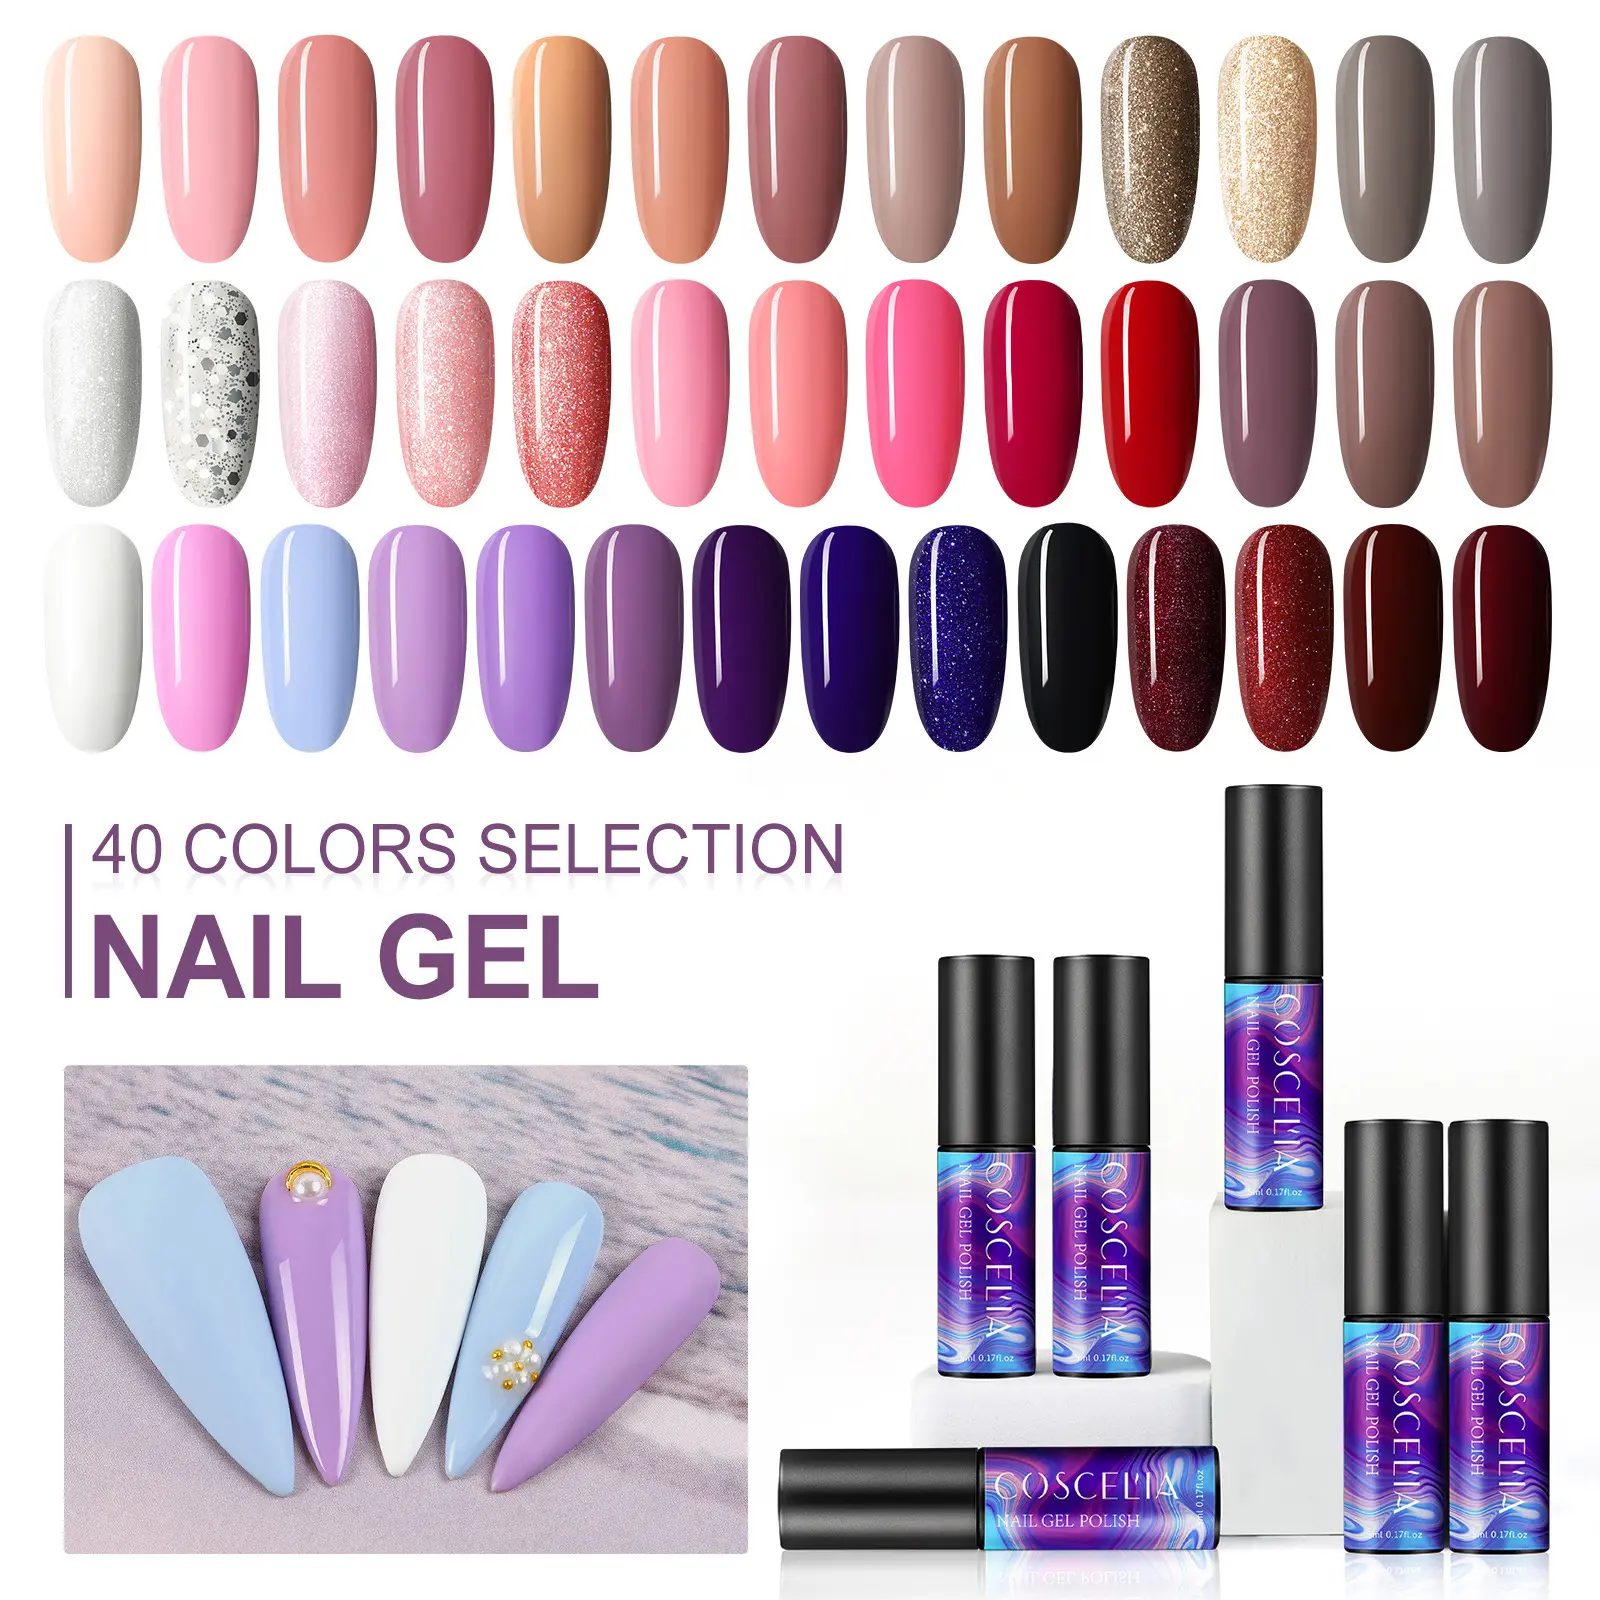 Professional Nail Art 5ml 40 Colors Nail Gel Kit Soak Off Led Uv Light Manicure Gel Nail Polish Set